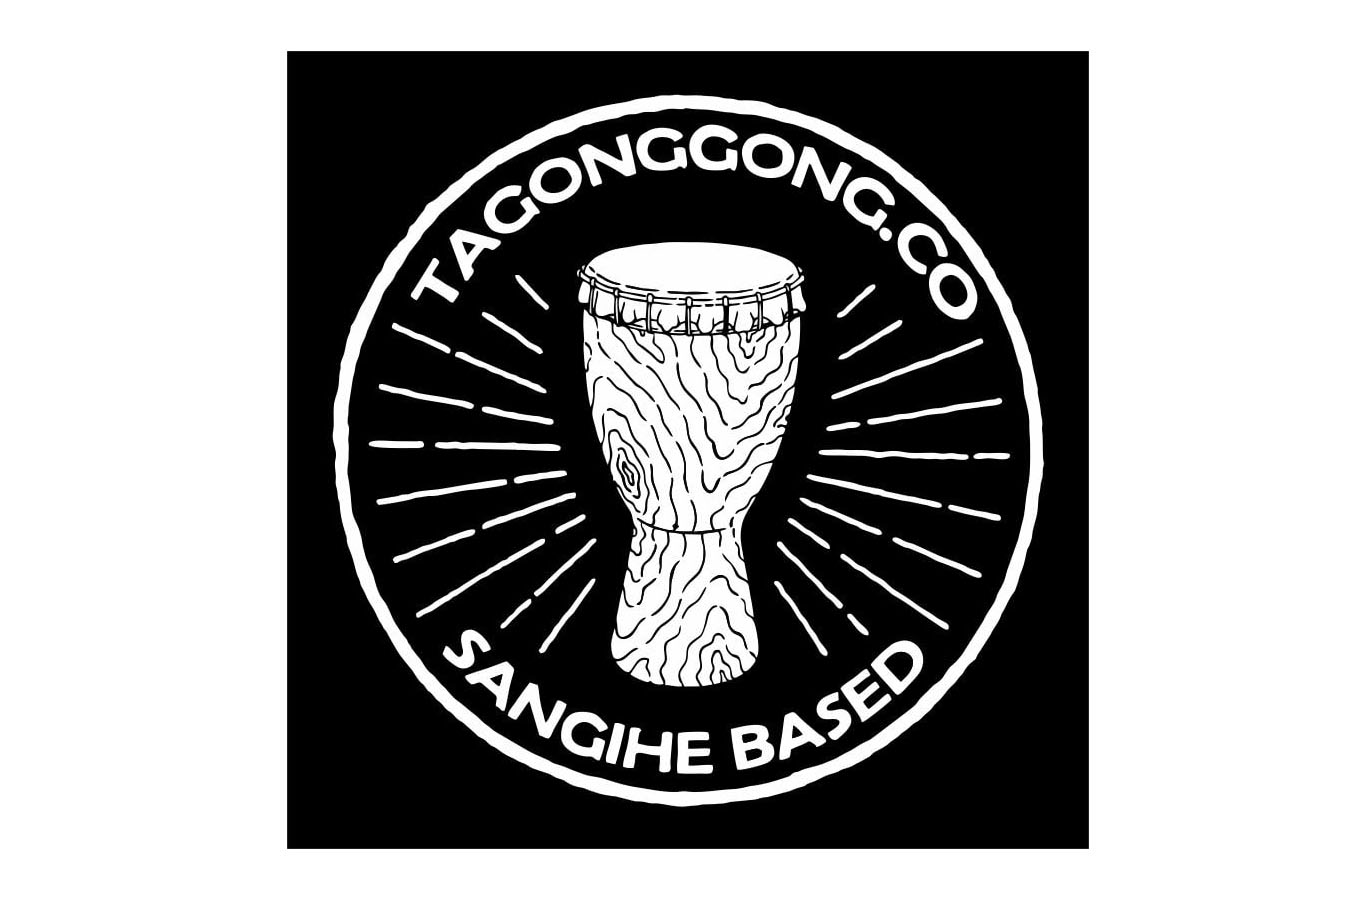 Desain Label Kaos Tagonggong